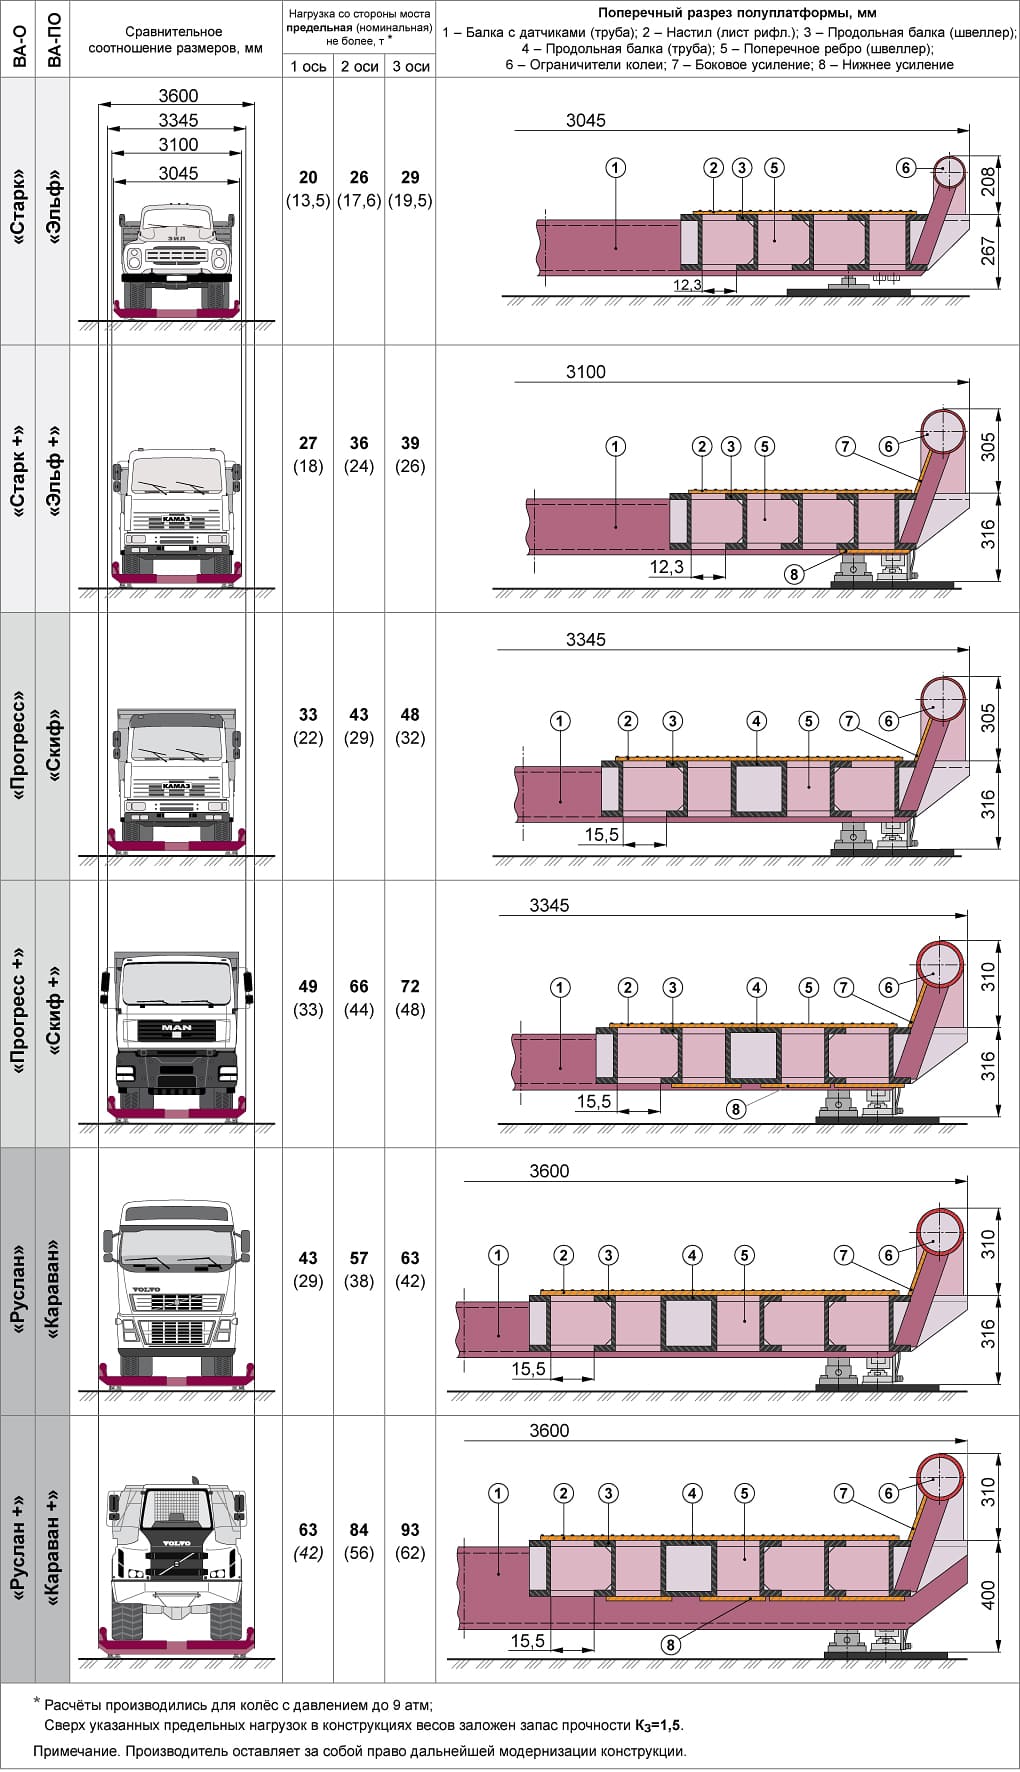 Сравнительный вид разных моделей автомобильных весов ВА-О и ВА-ПО